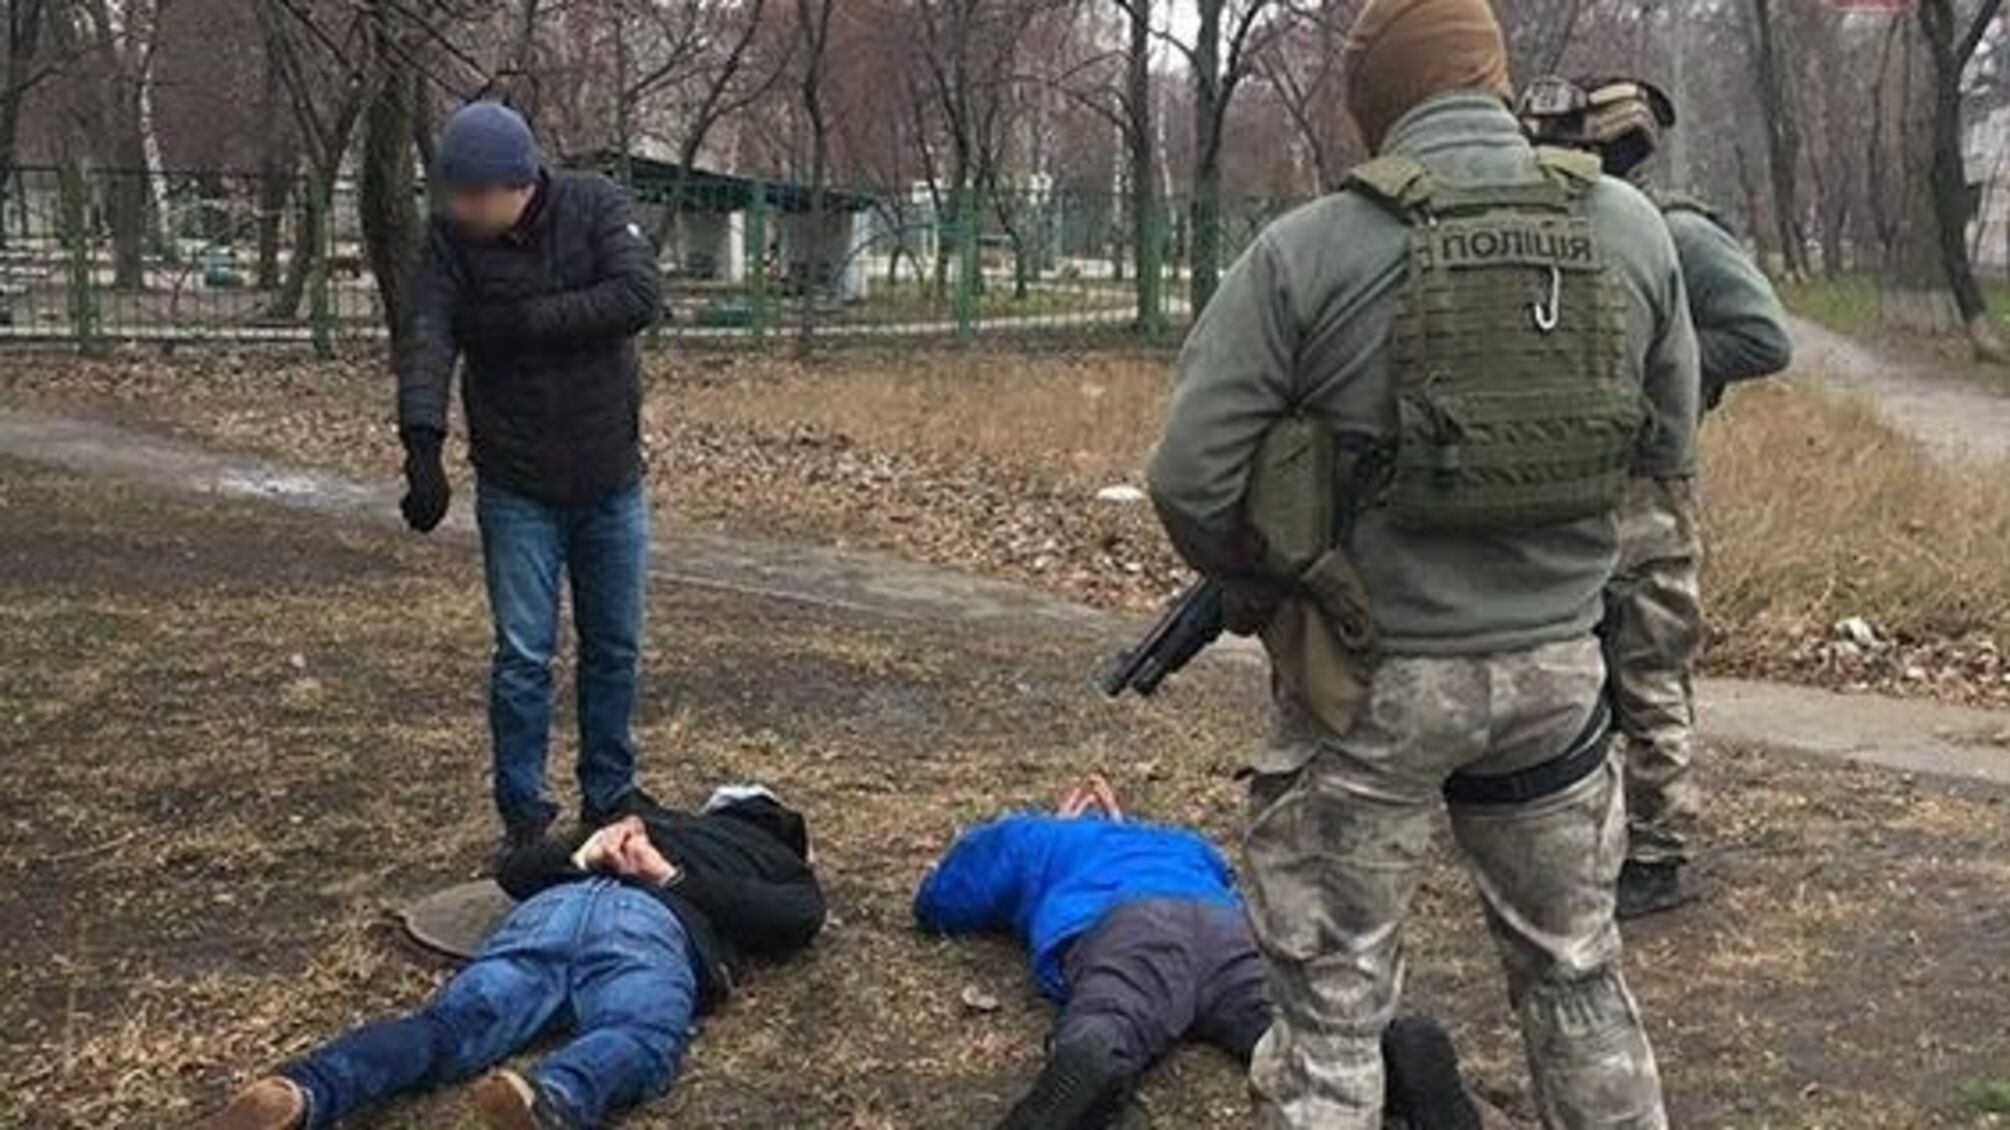 Правоохоронці виявили масштабний наркобізнес — Київ-Маріуполь (фото, відео)